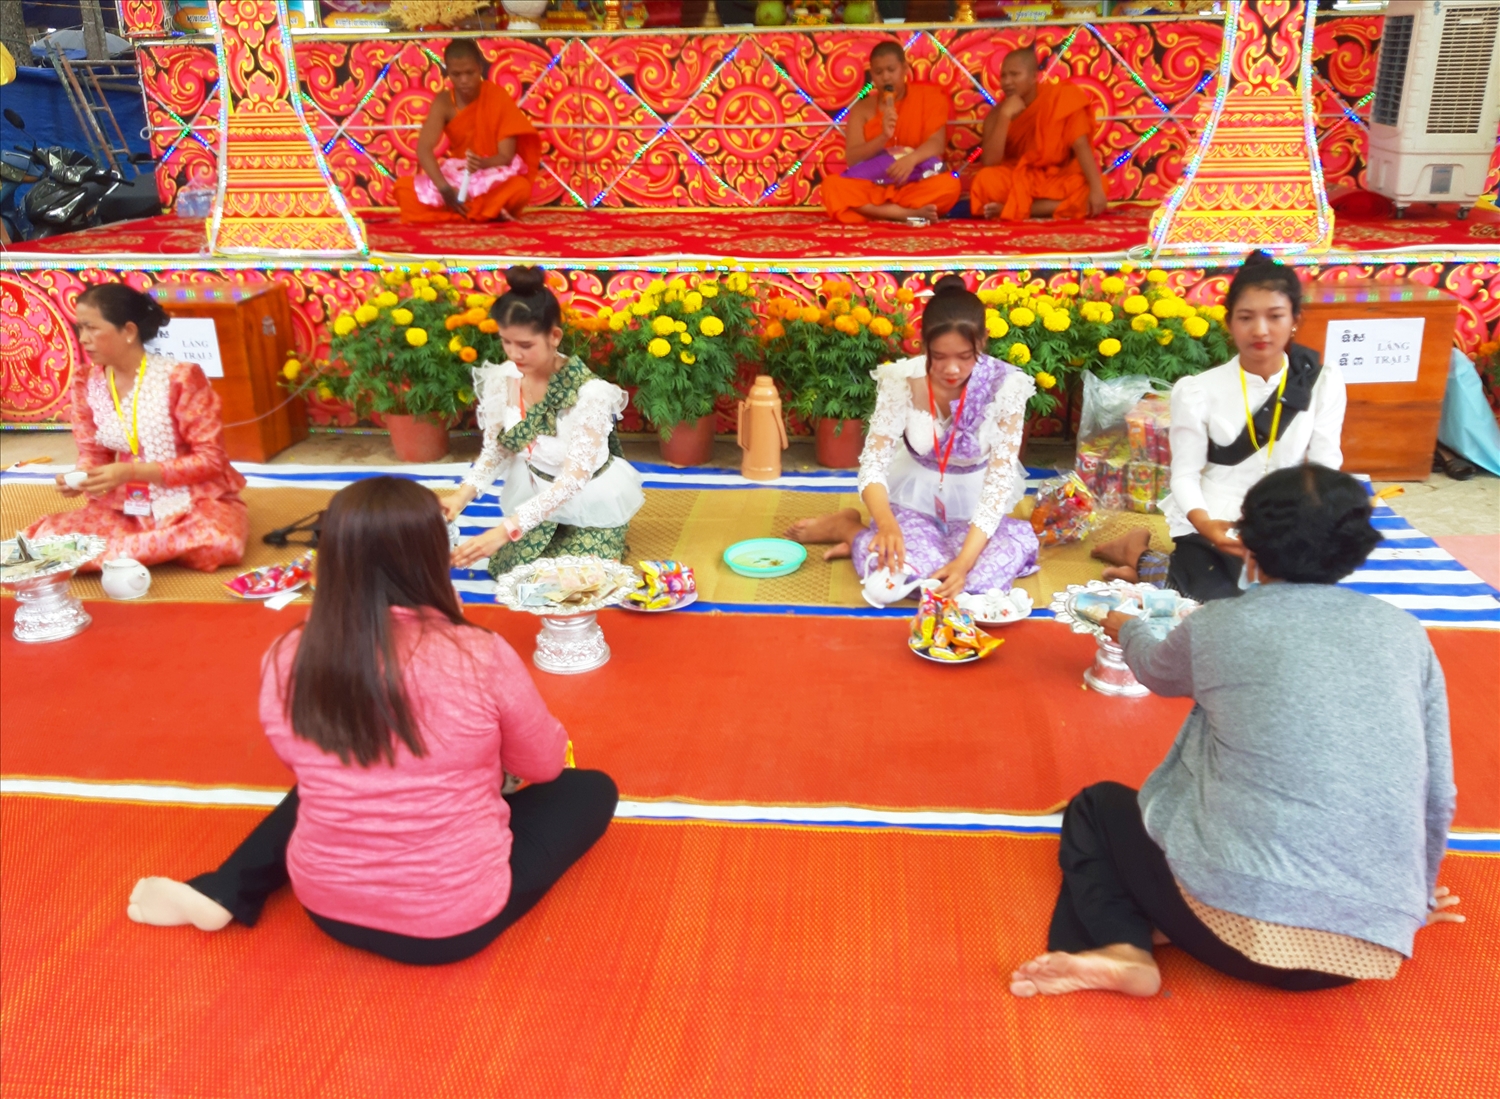 Lễ Panh Kom San Srok là dịp để người dân phum sóc gặp gỡ, thăm hỏi sức khỏe, trao đổi kinh nghiệm sản xuất và đóng góp an sinh xã hội ở địa phương.